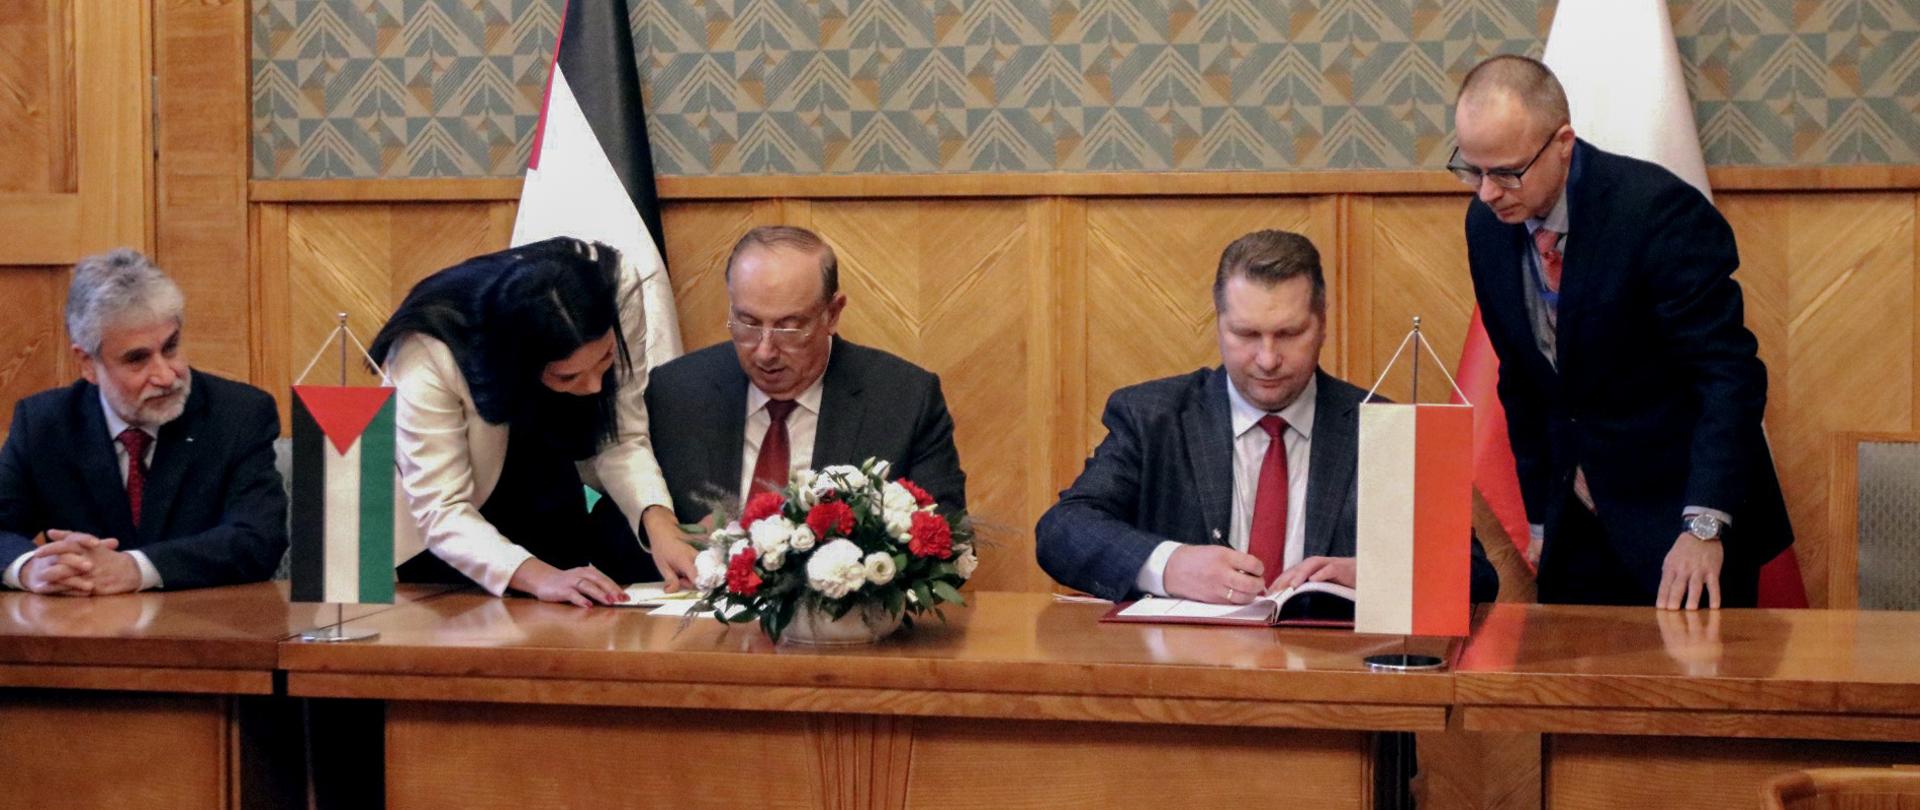 Za drewnianym stołem siedzi trzech mężczyzn w garniturach, jednemu z nich kobieta w białym ubraniu podaje dokumenty, przed nimi małe flagi Polski i Palestyny i bukiet biało-czerwonych kwiatów. Za nimi ściana w zielony wzorek.